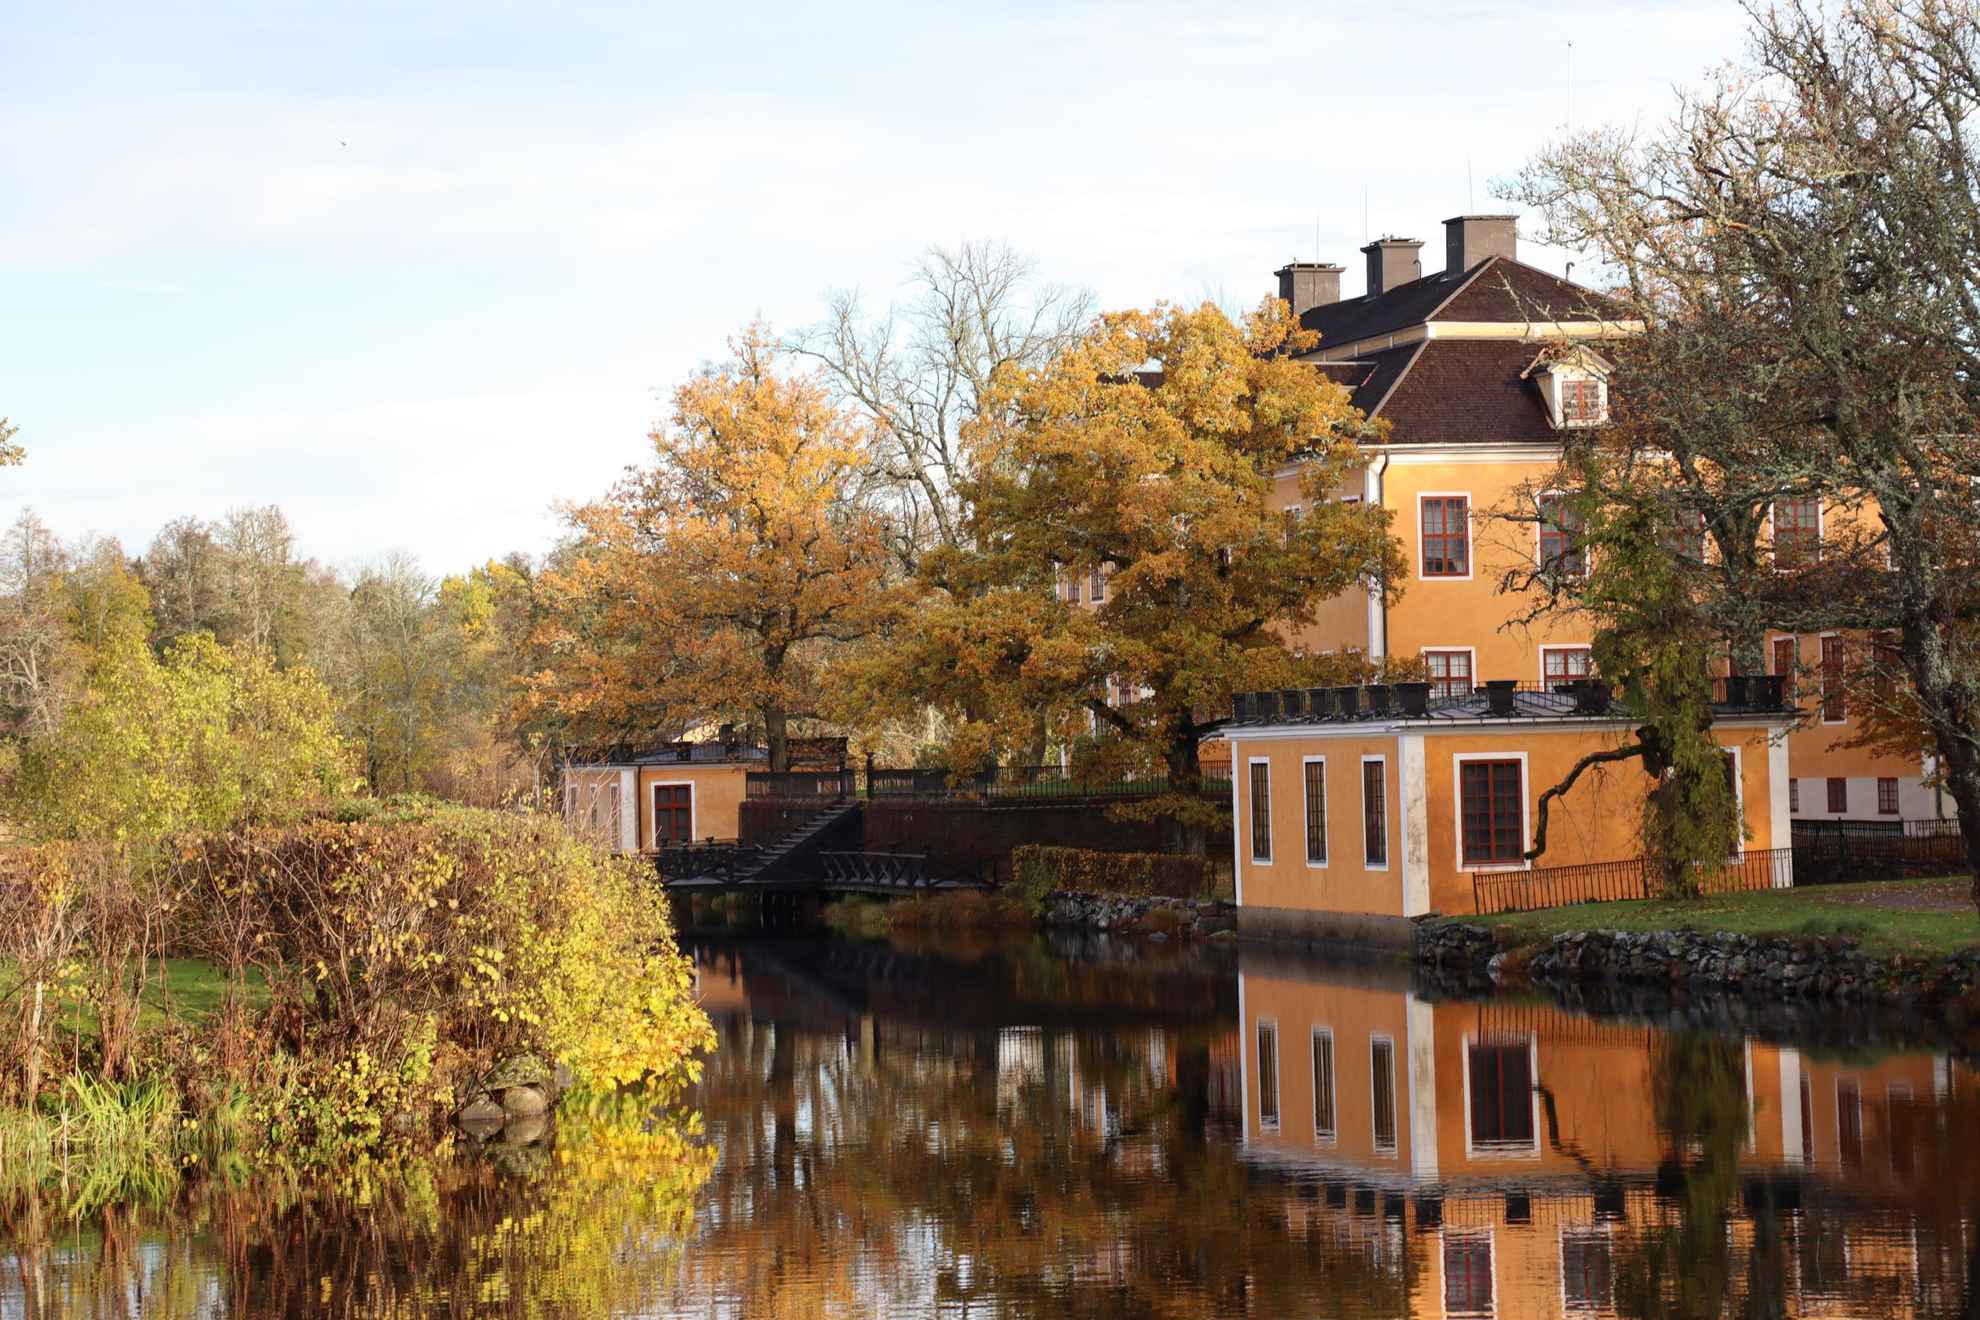 La demeure de Lövstabruk avec sa façade orange et ses contours blancs au bord de l'eau.